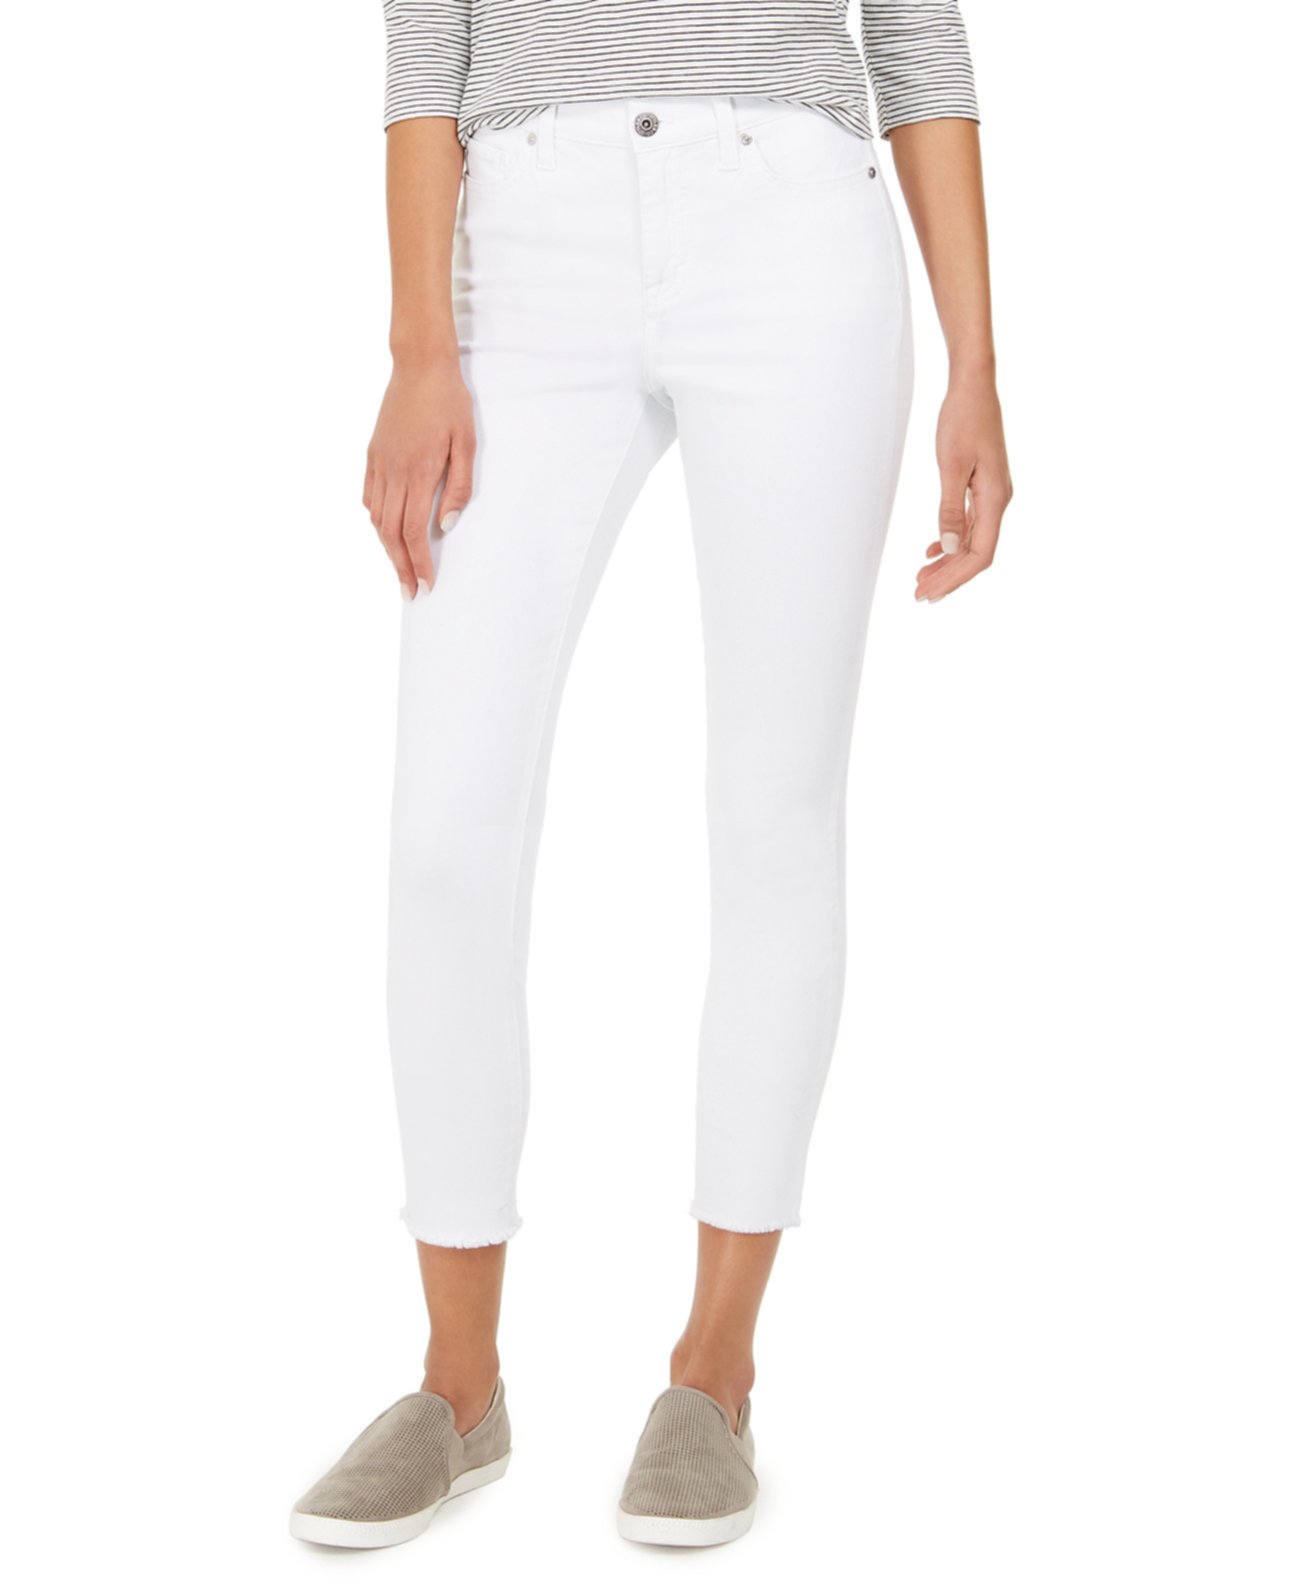 Джинсовые джинсы с лодыжкой Fray, созданные для Macy's Style & Co